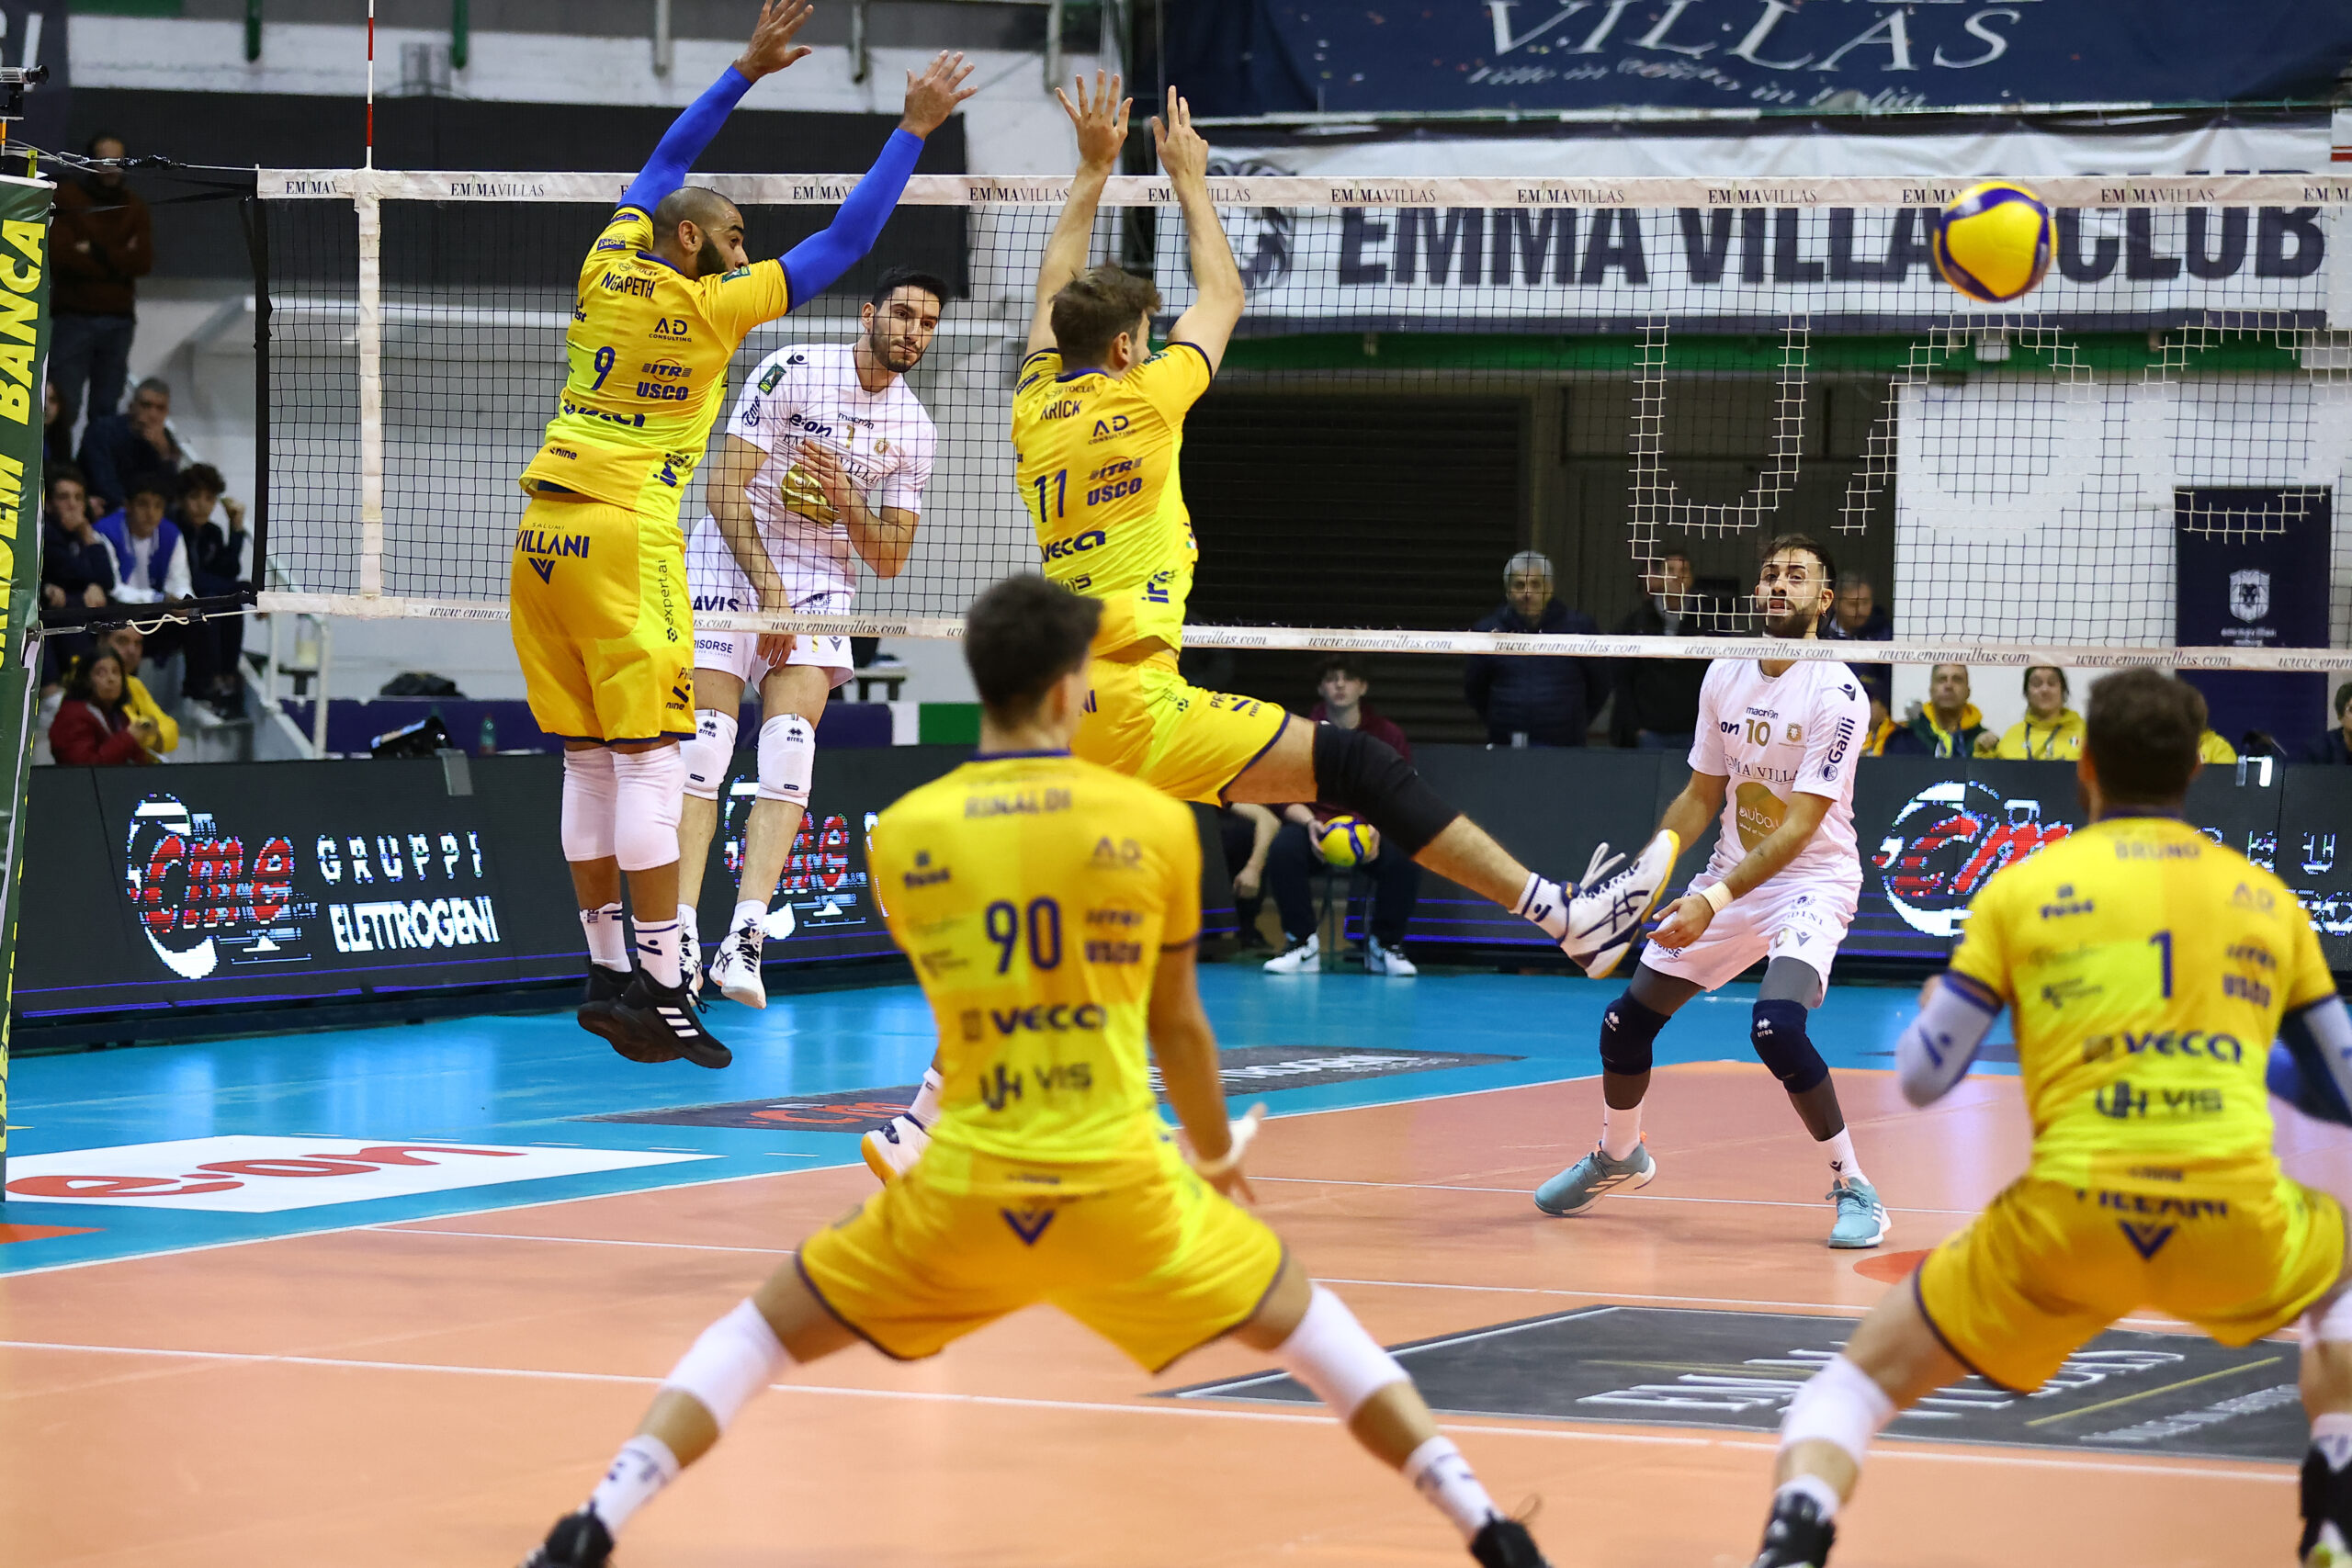  Modena Volley vince a Siena (3-1) e assesta la classifica